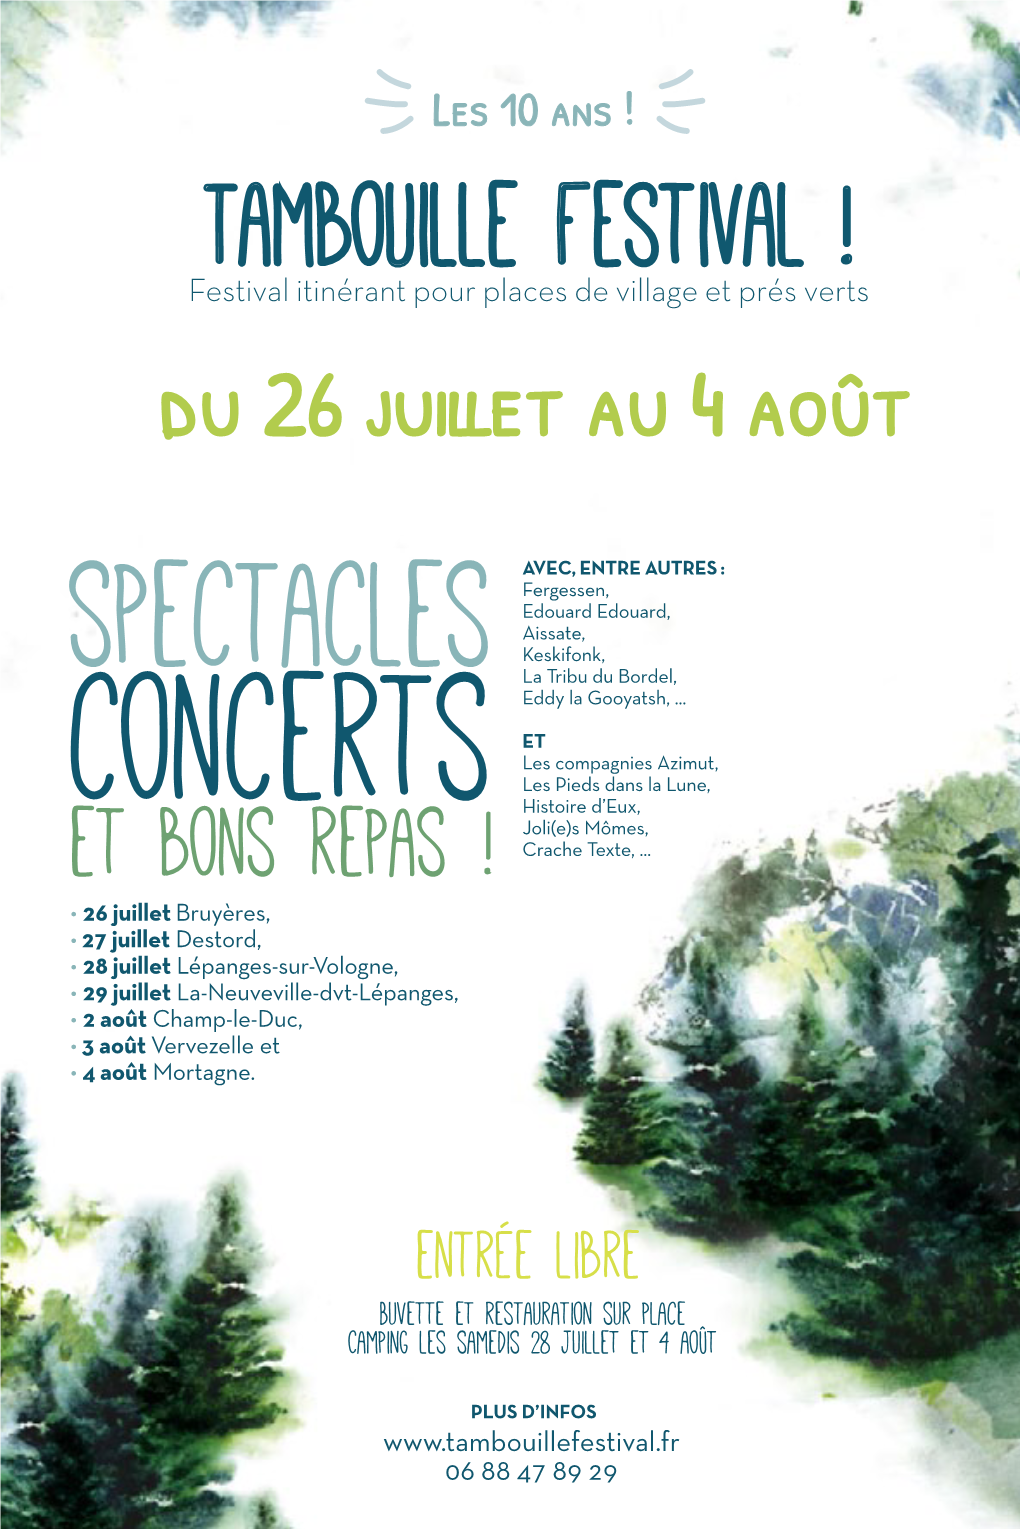 Concerts Histoire D’Eux, Joli(E)S Mômes, Et Bons Repas ! Crache Texte,